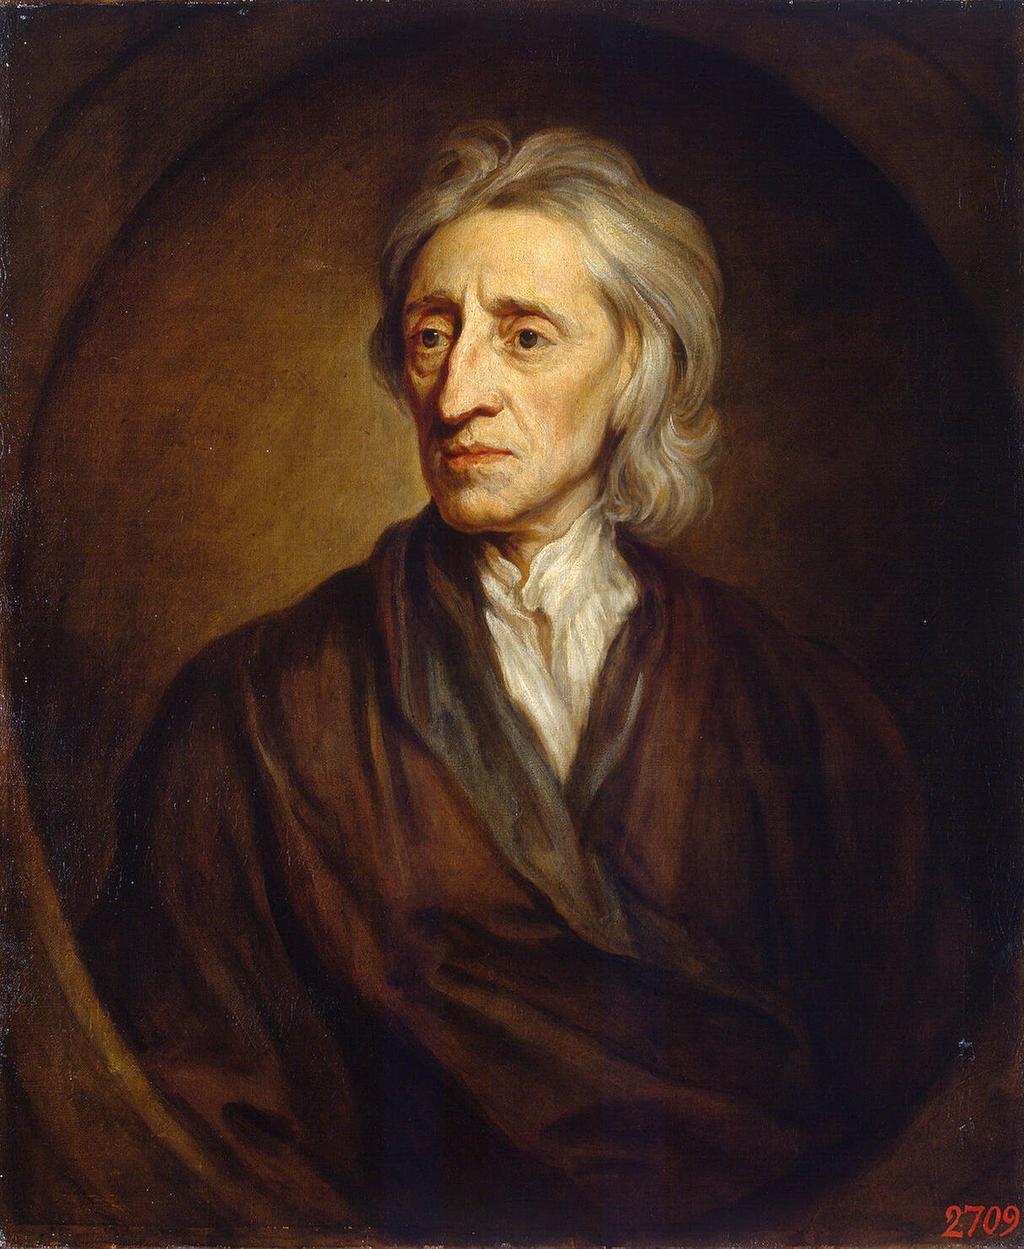 John Locke (1632